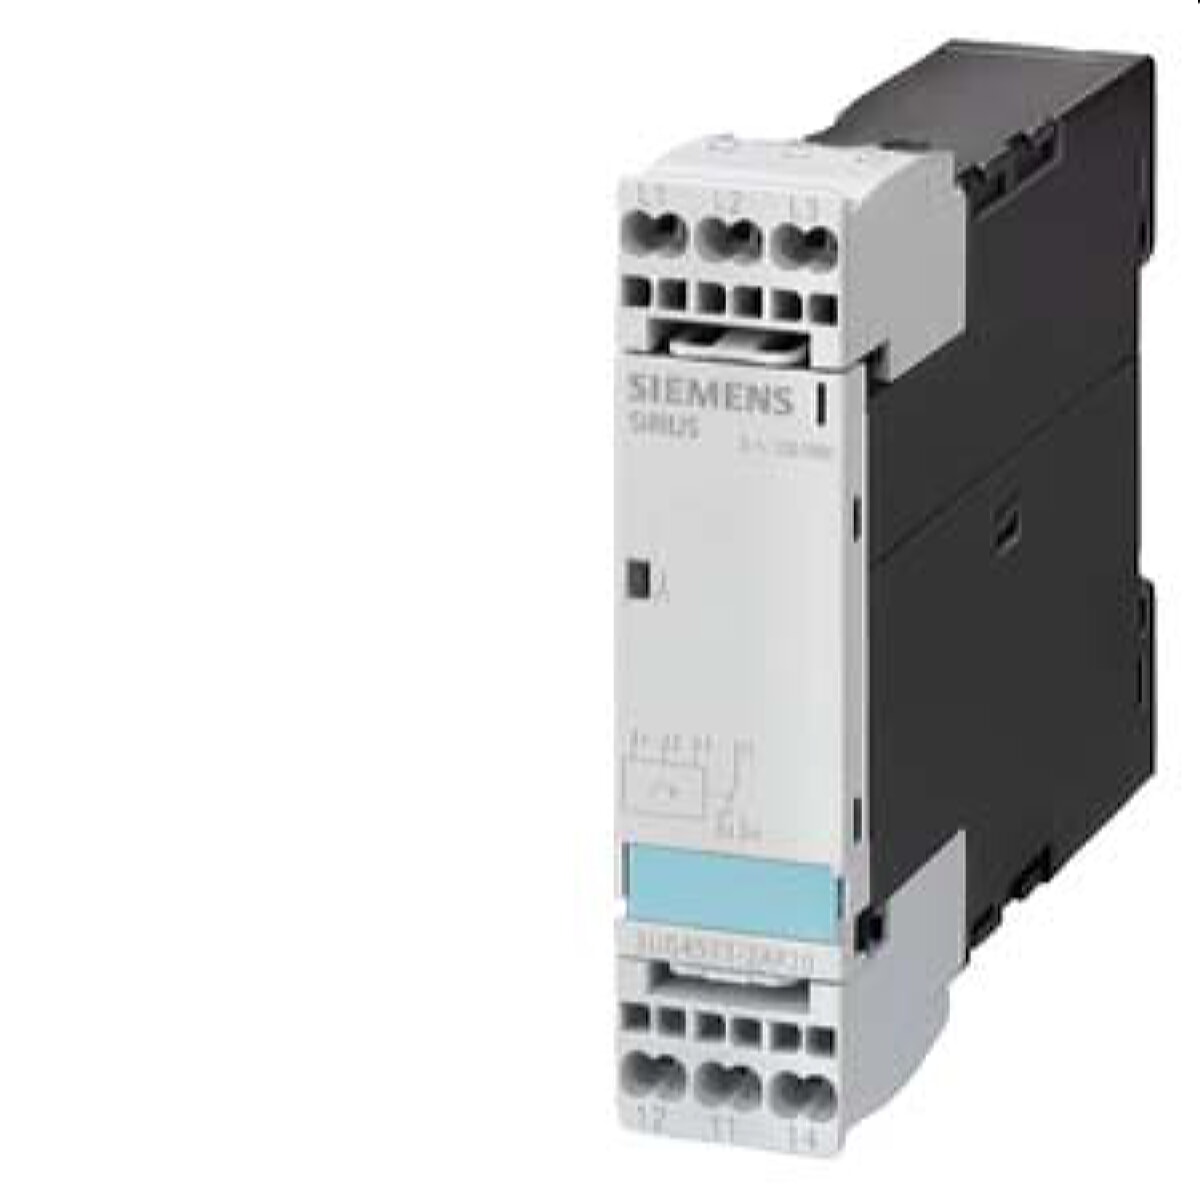 Siemens analoges Überwachungsrelais AC 50 bis 60Hz 1WE 3UG4511-2AQ20